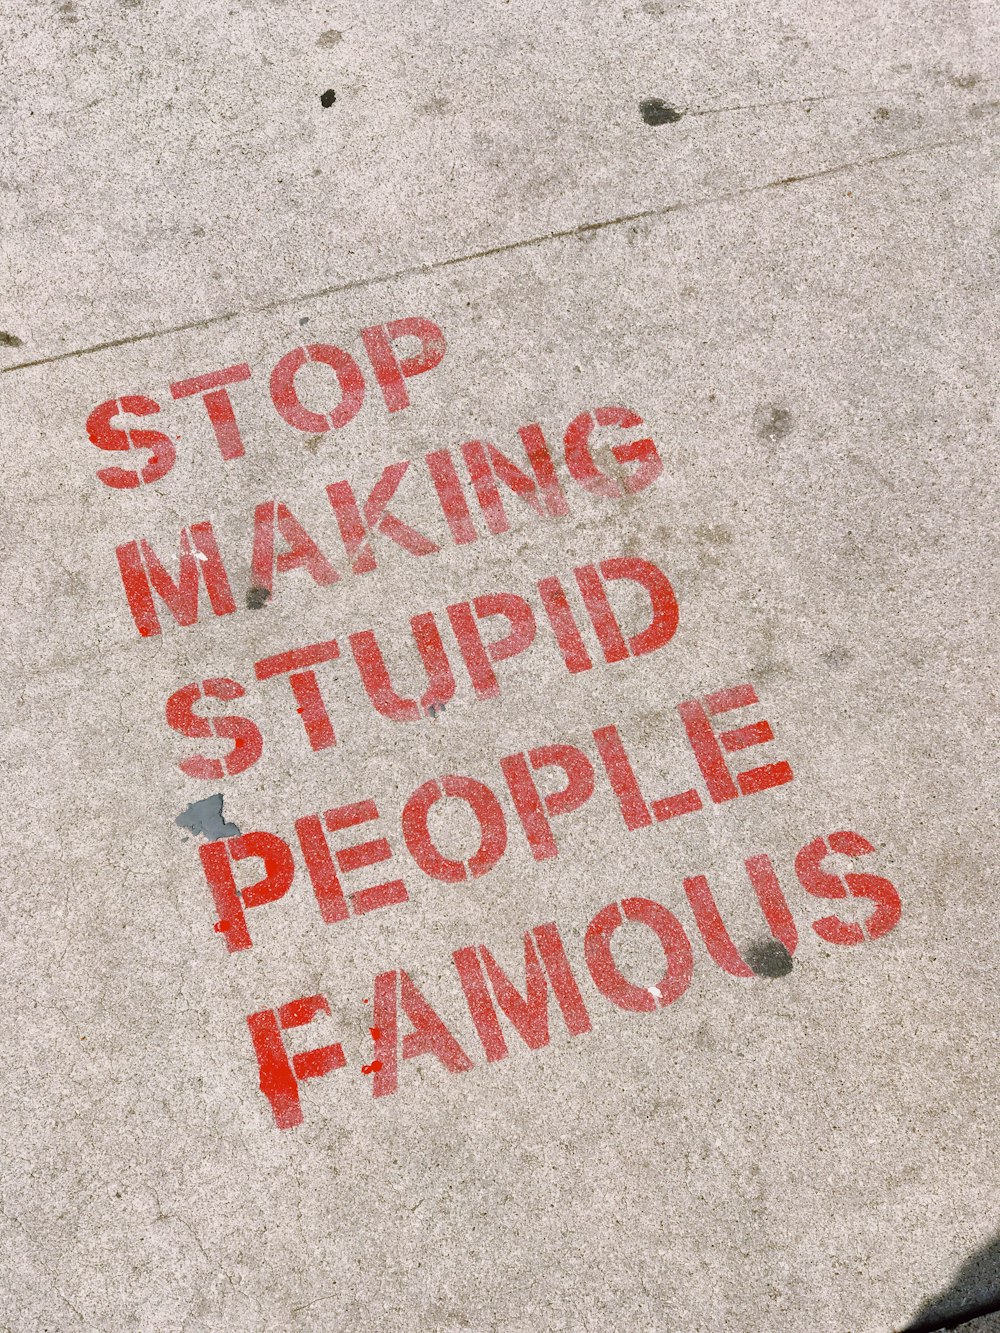 Arrêtez de rendre les gens stupides célèbres